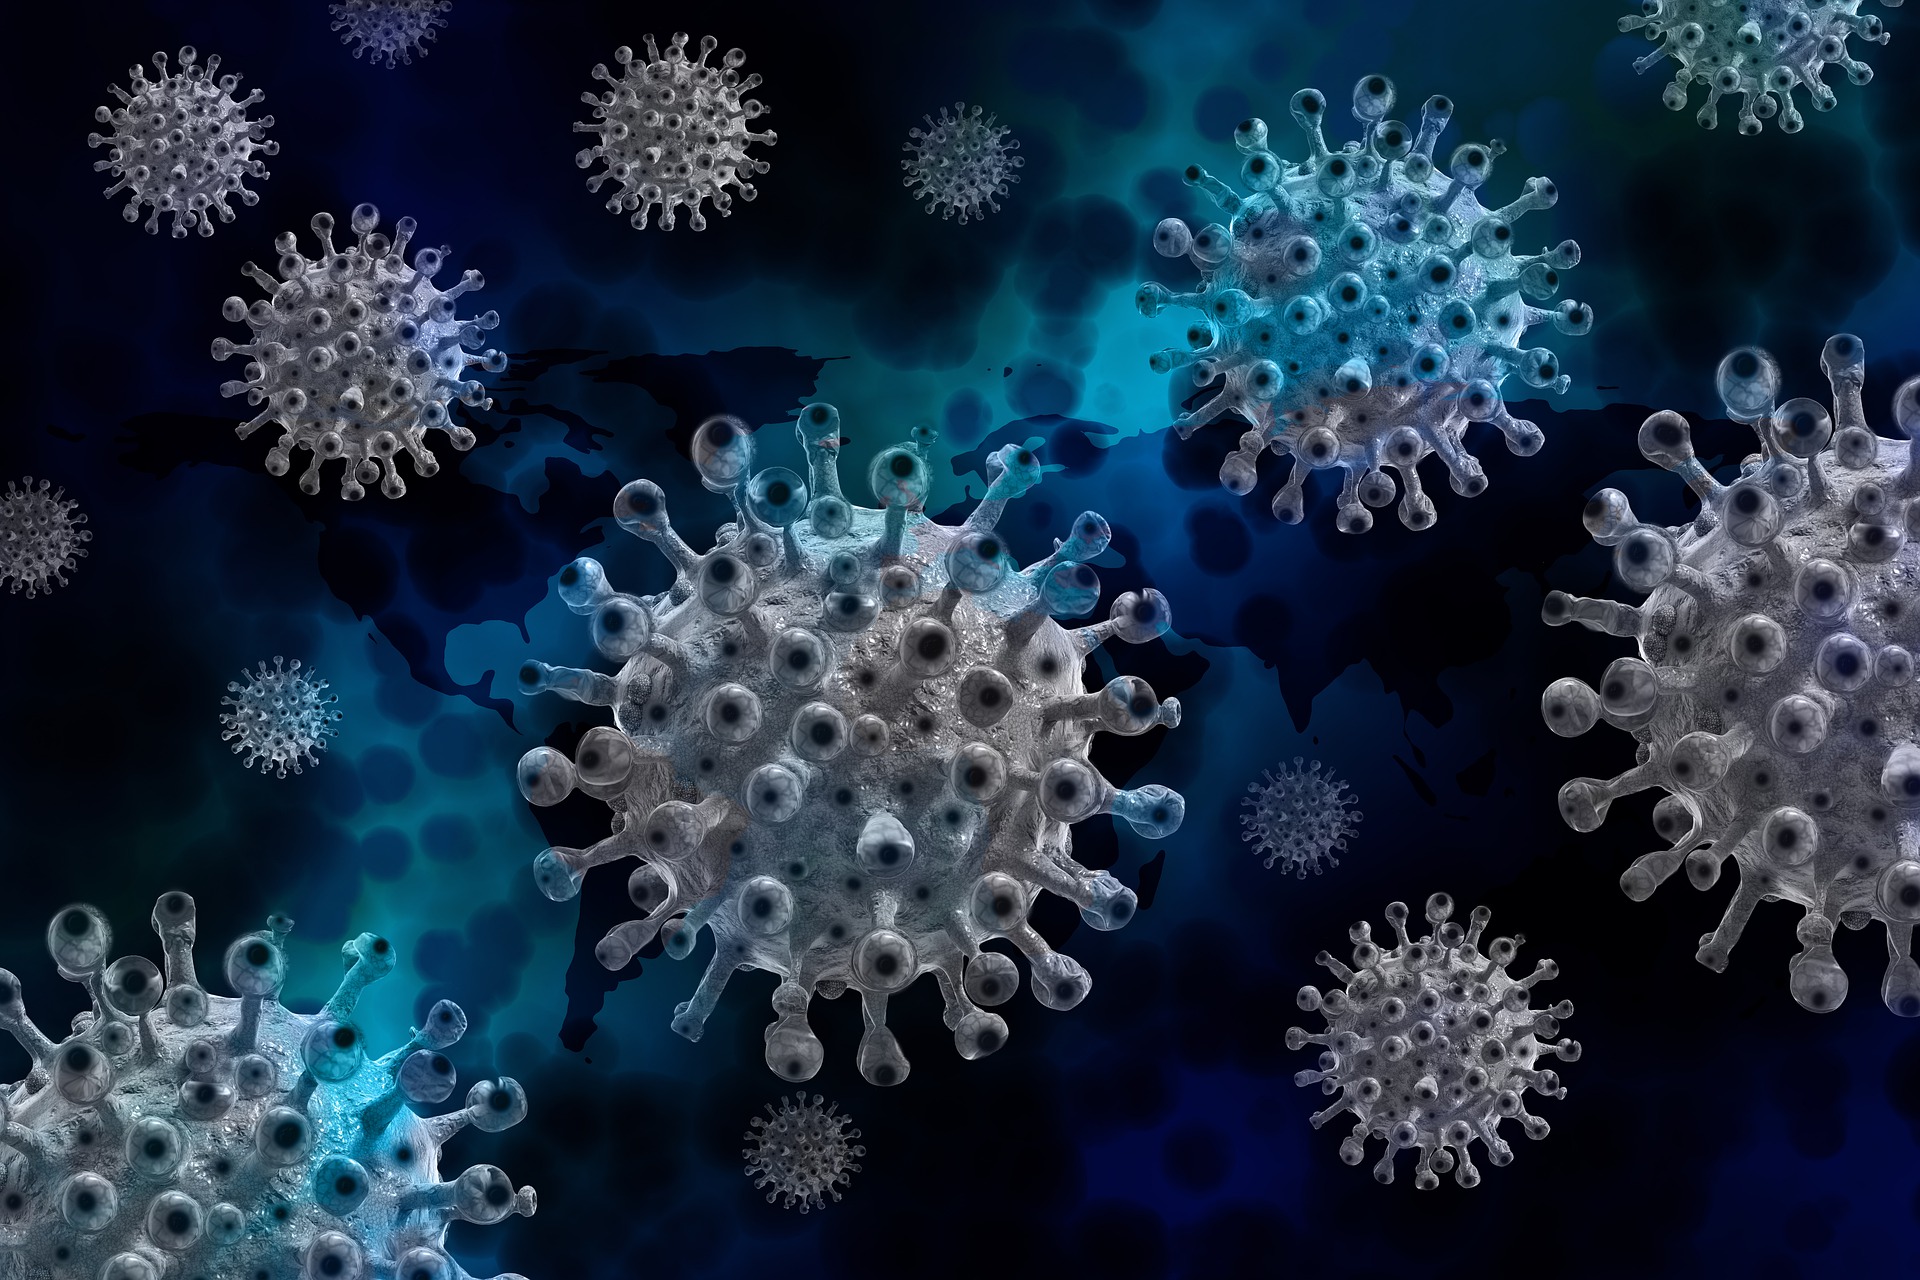 Coronavirus, in Toscana 215 nuovi casi positivi, età media 37 anni. I decessi sono 7